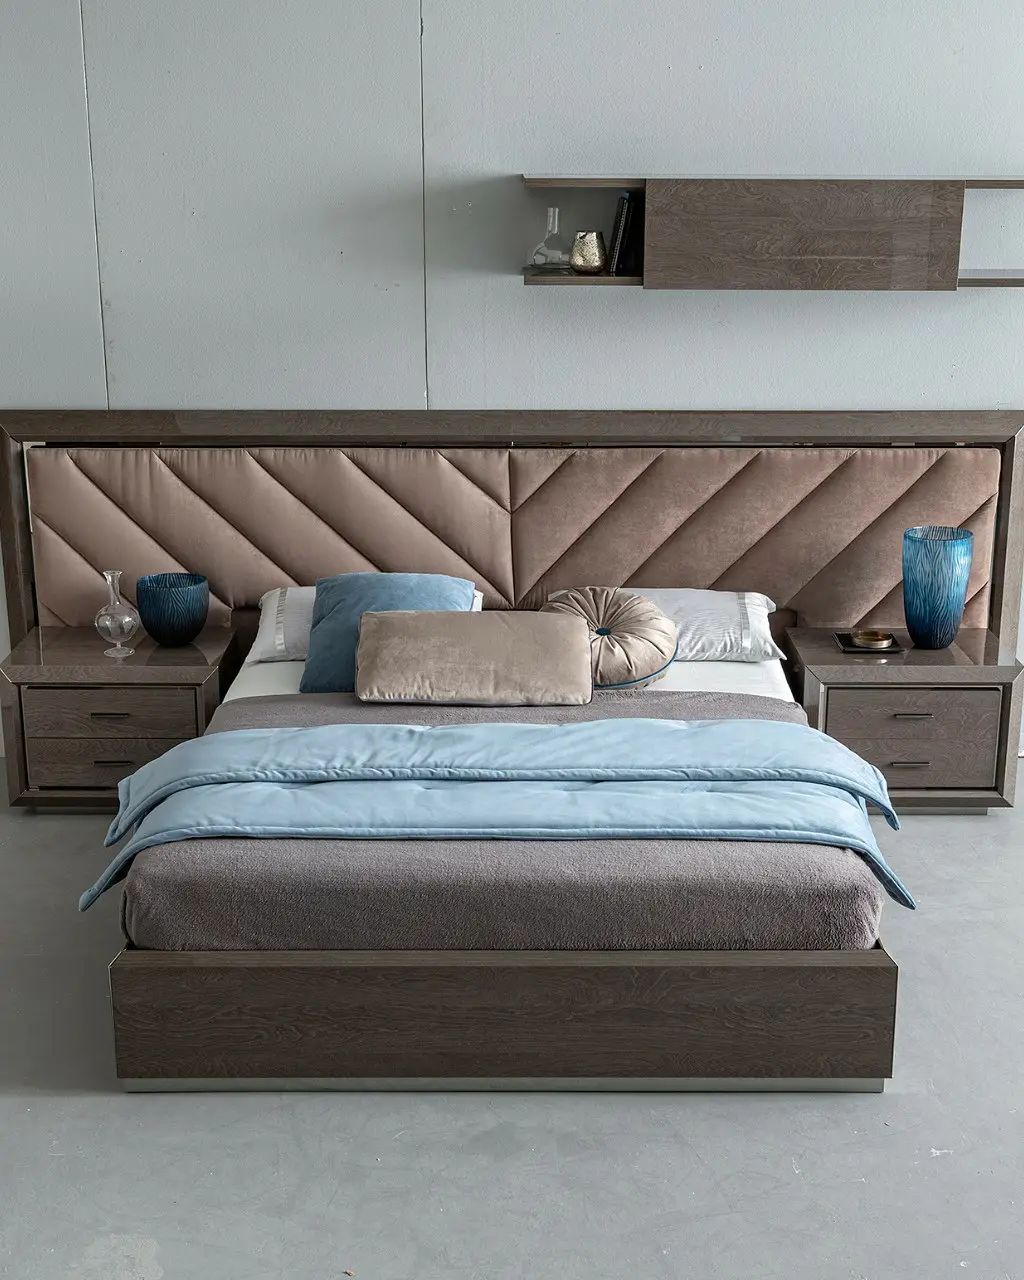 Кровать Camelgroup Elite silver, двуспальная, с подъемным механизмом, 160х200 см, широкое мягкое изголовье Nabuk 12, цвет: серебристая береза (165LET.21PL)165LET.21PL